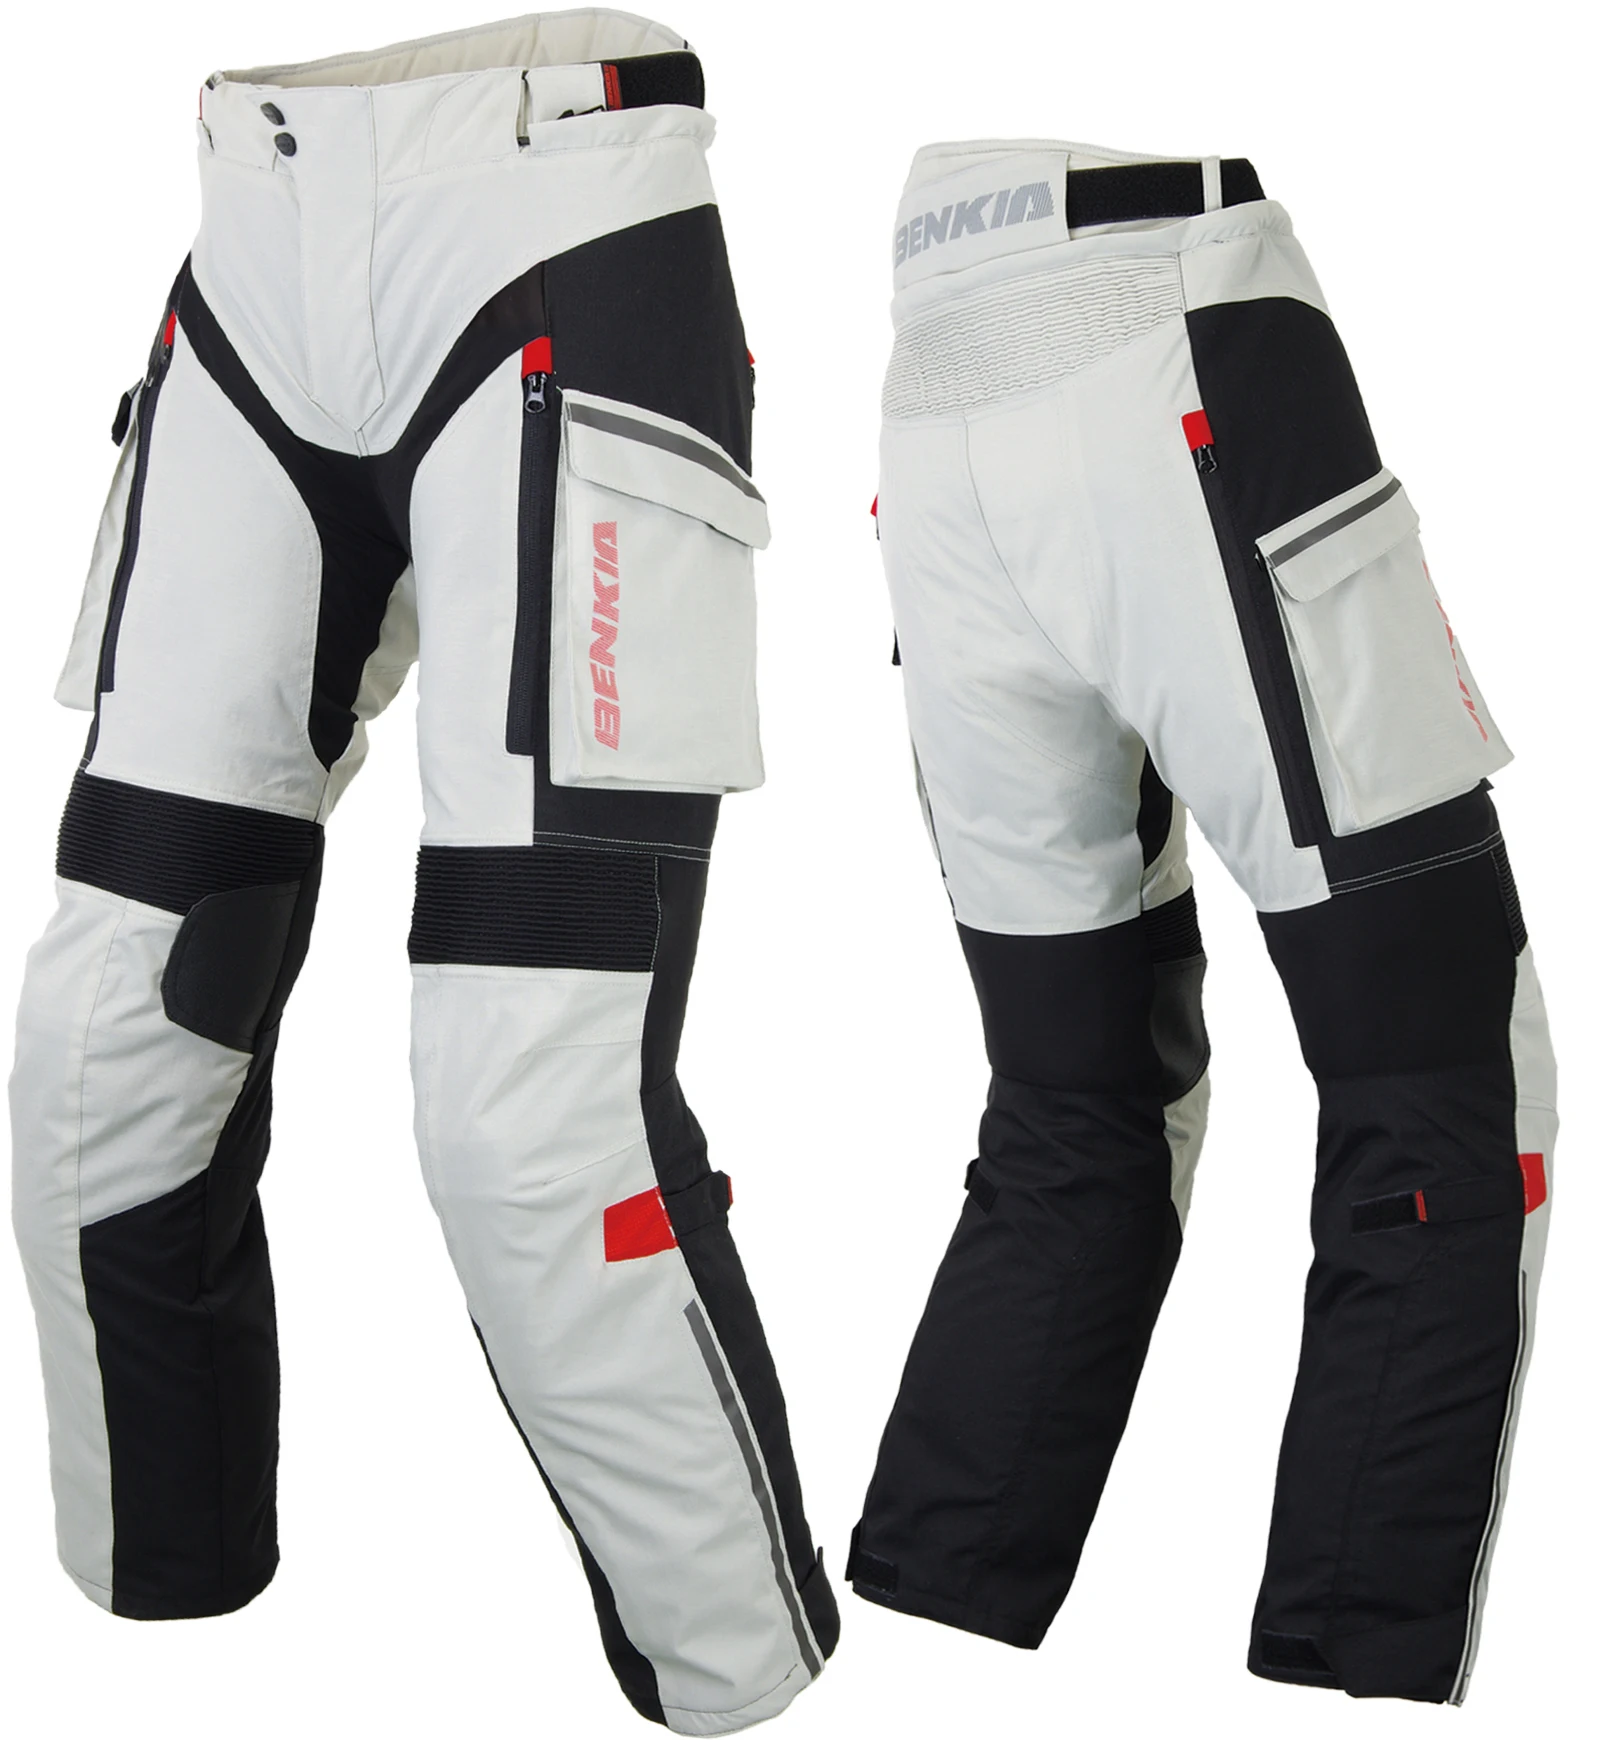 BENKIA зимние мотоциклетные штаны, штаны для гонок, ралли, со съемной теплой подкладкой, внедорожные брюки для мотокросса, мото штаны PW47 - Цвет: Серый